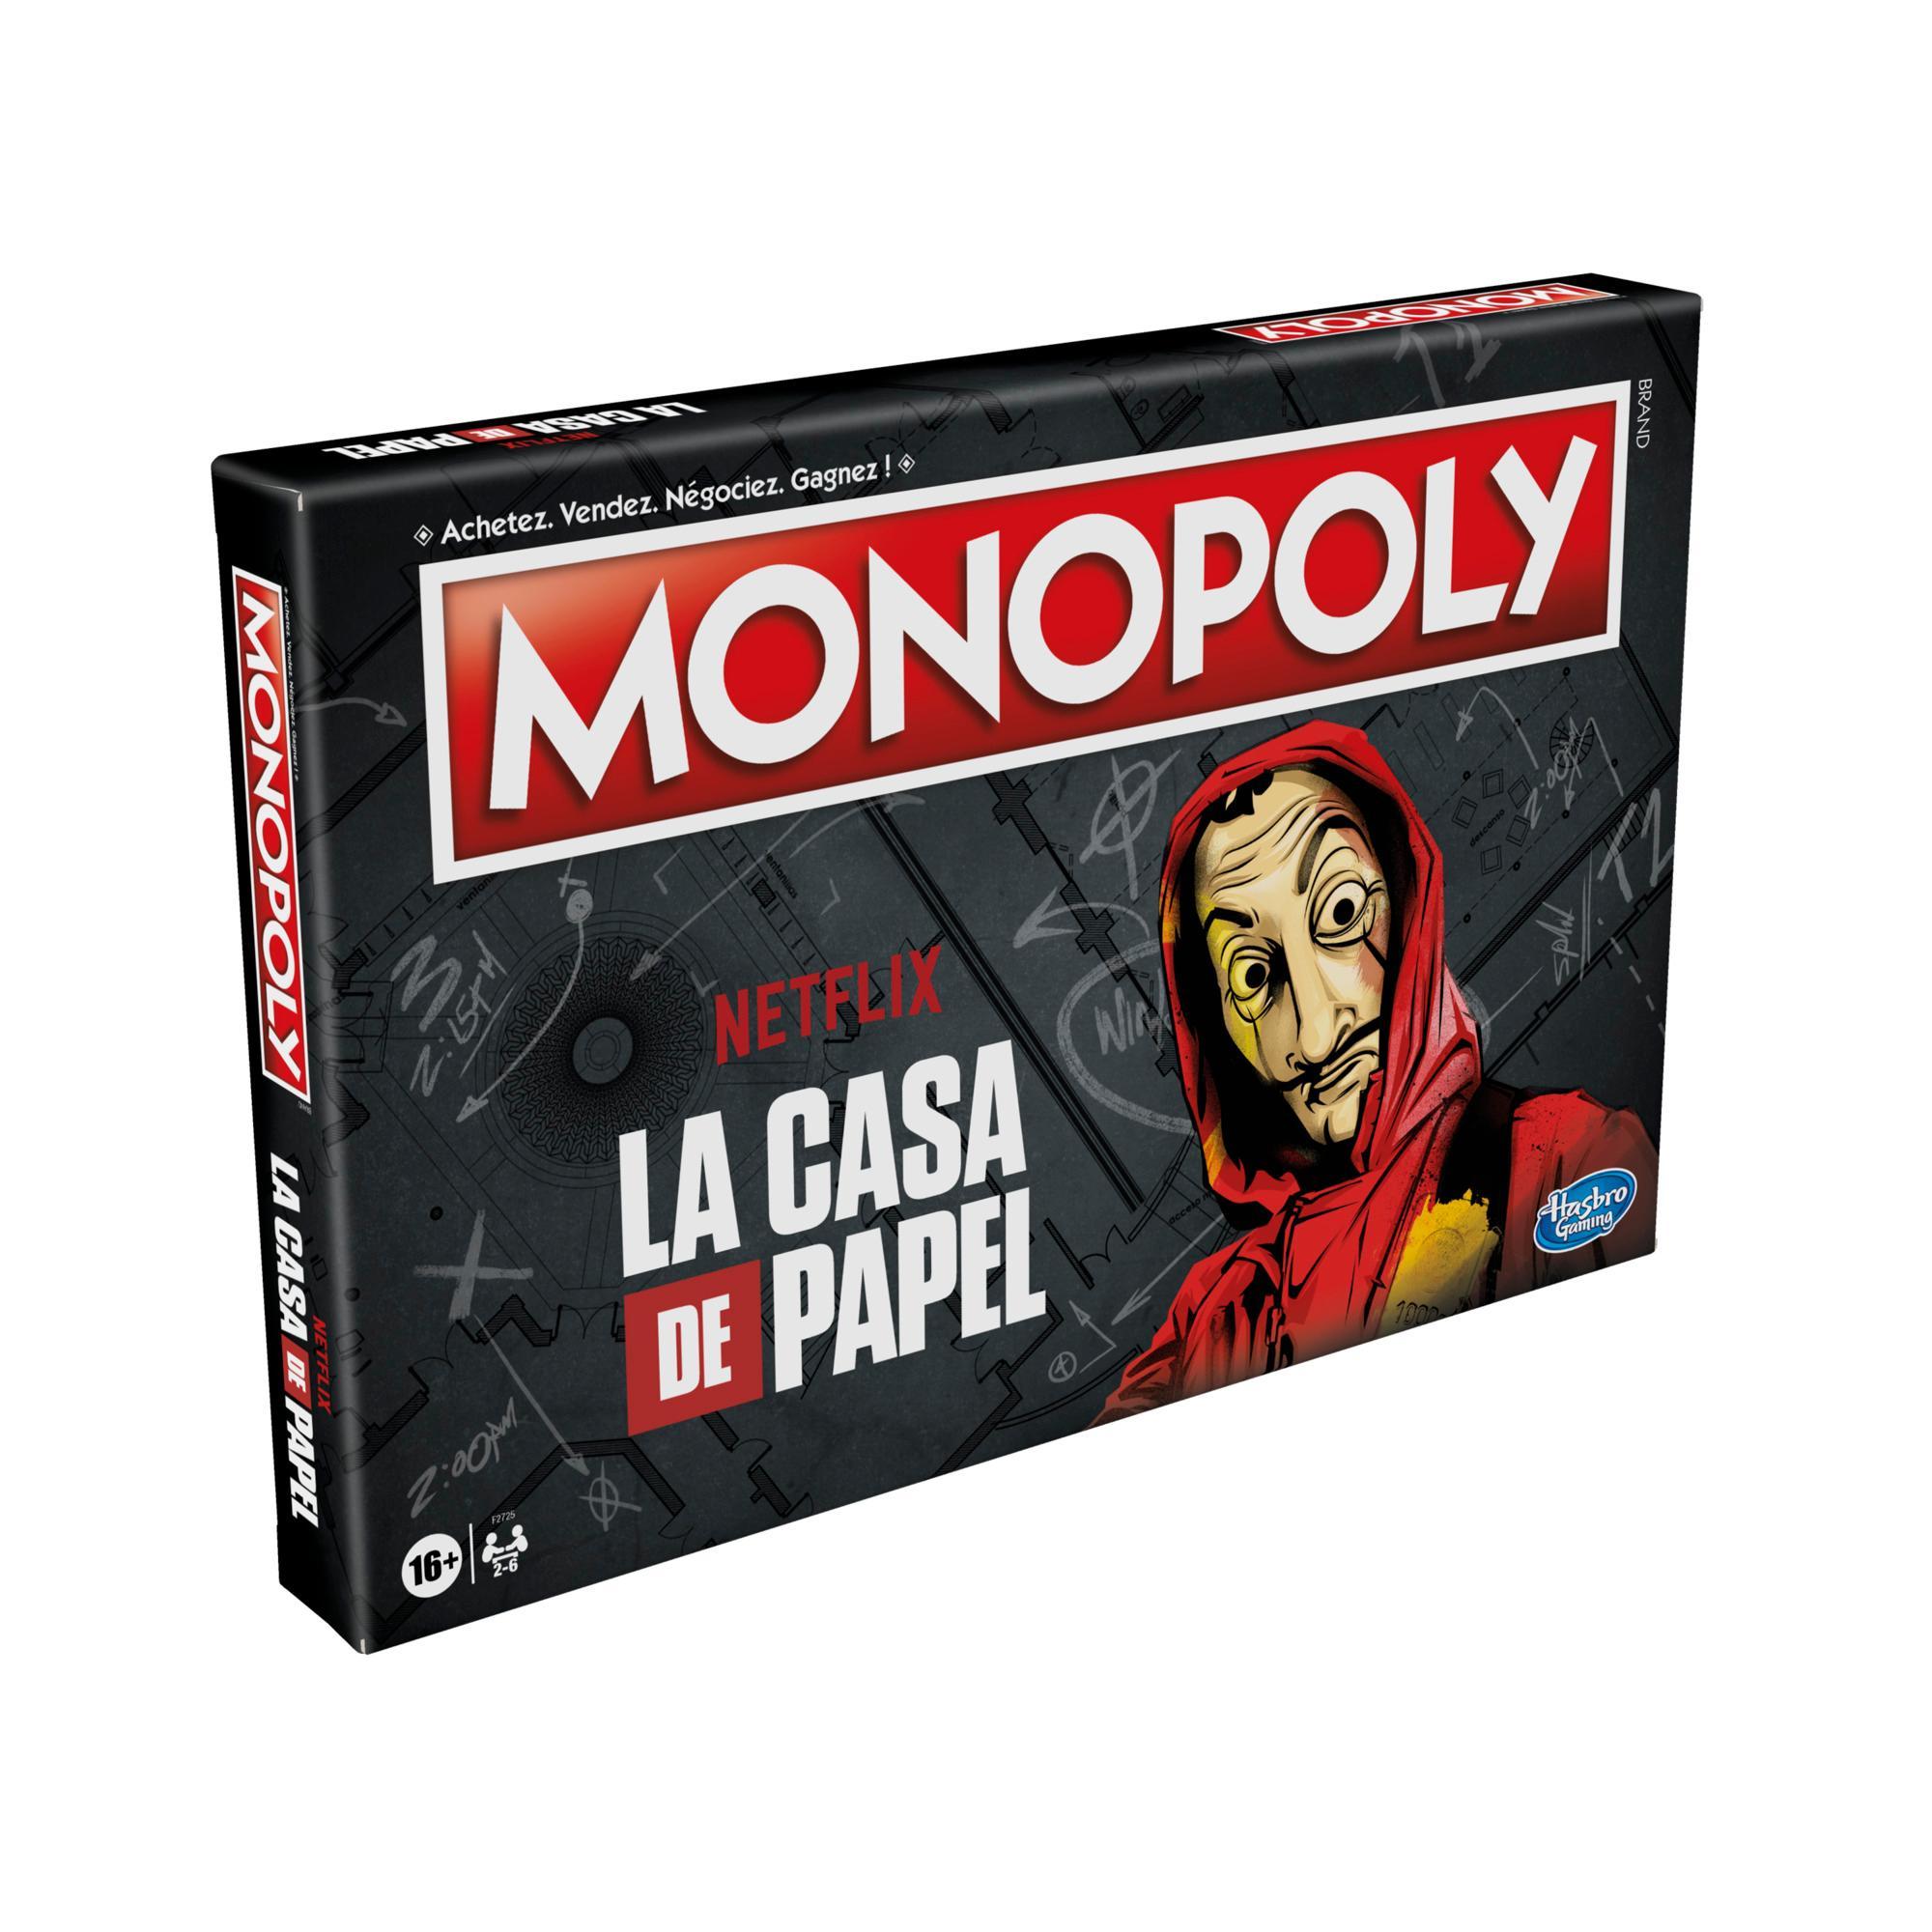 Monopoly Faux billets - Monopoly